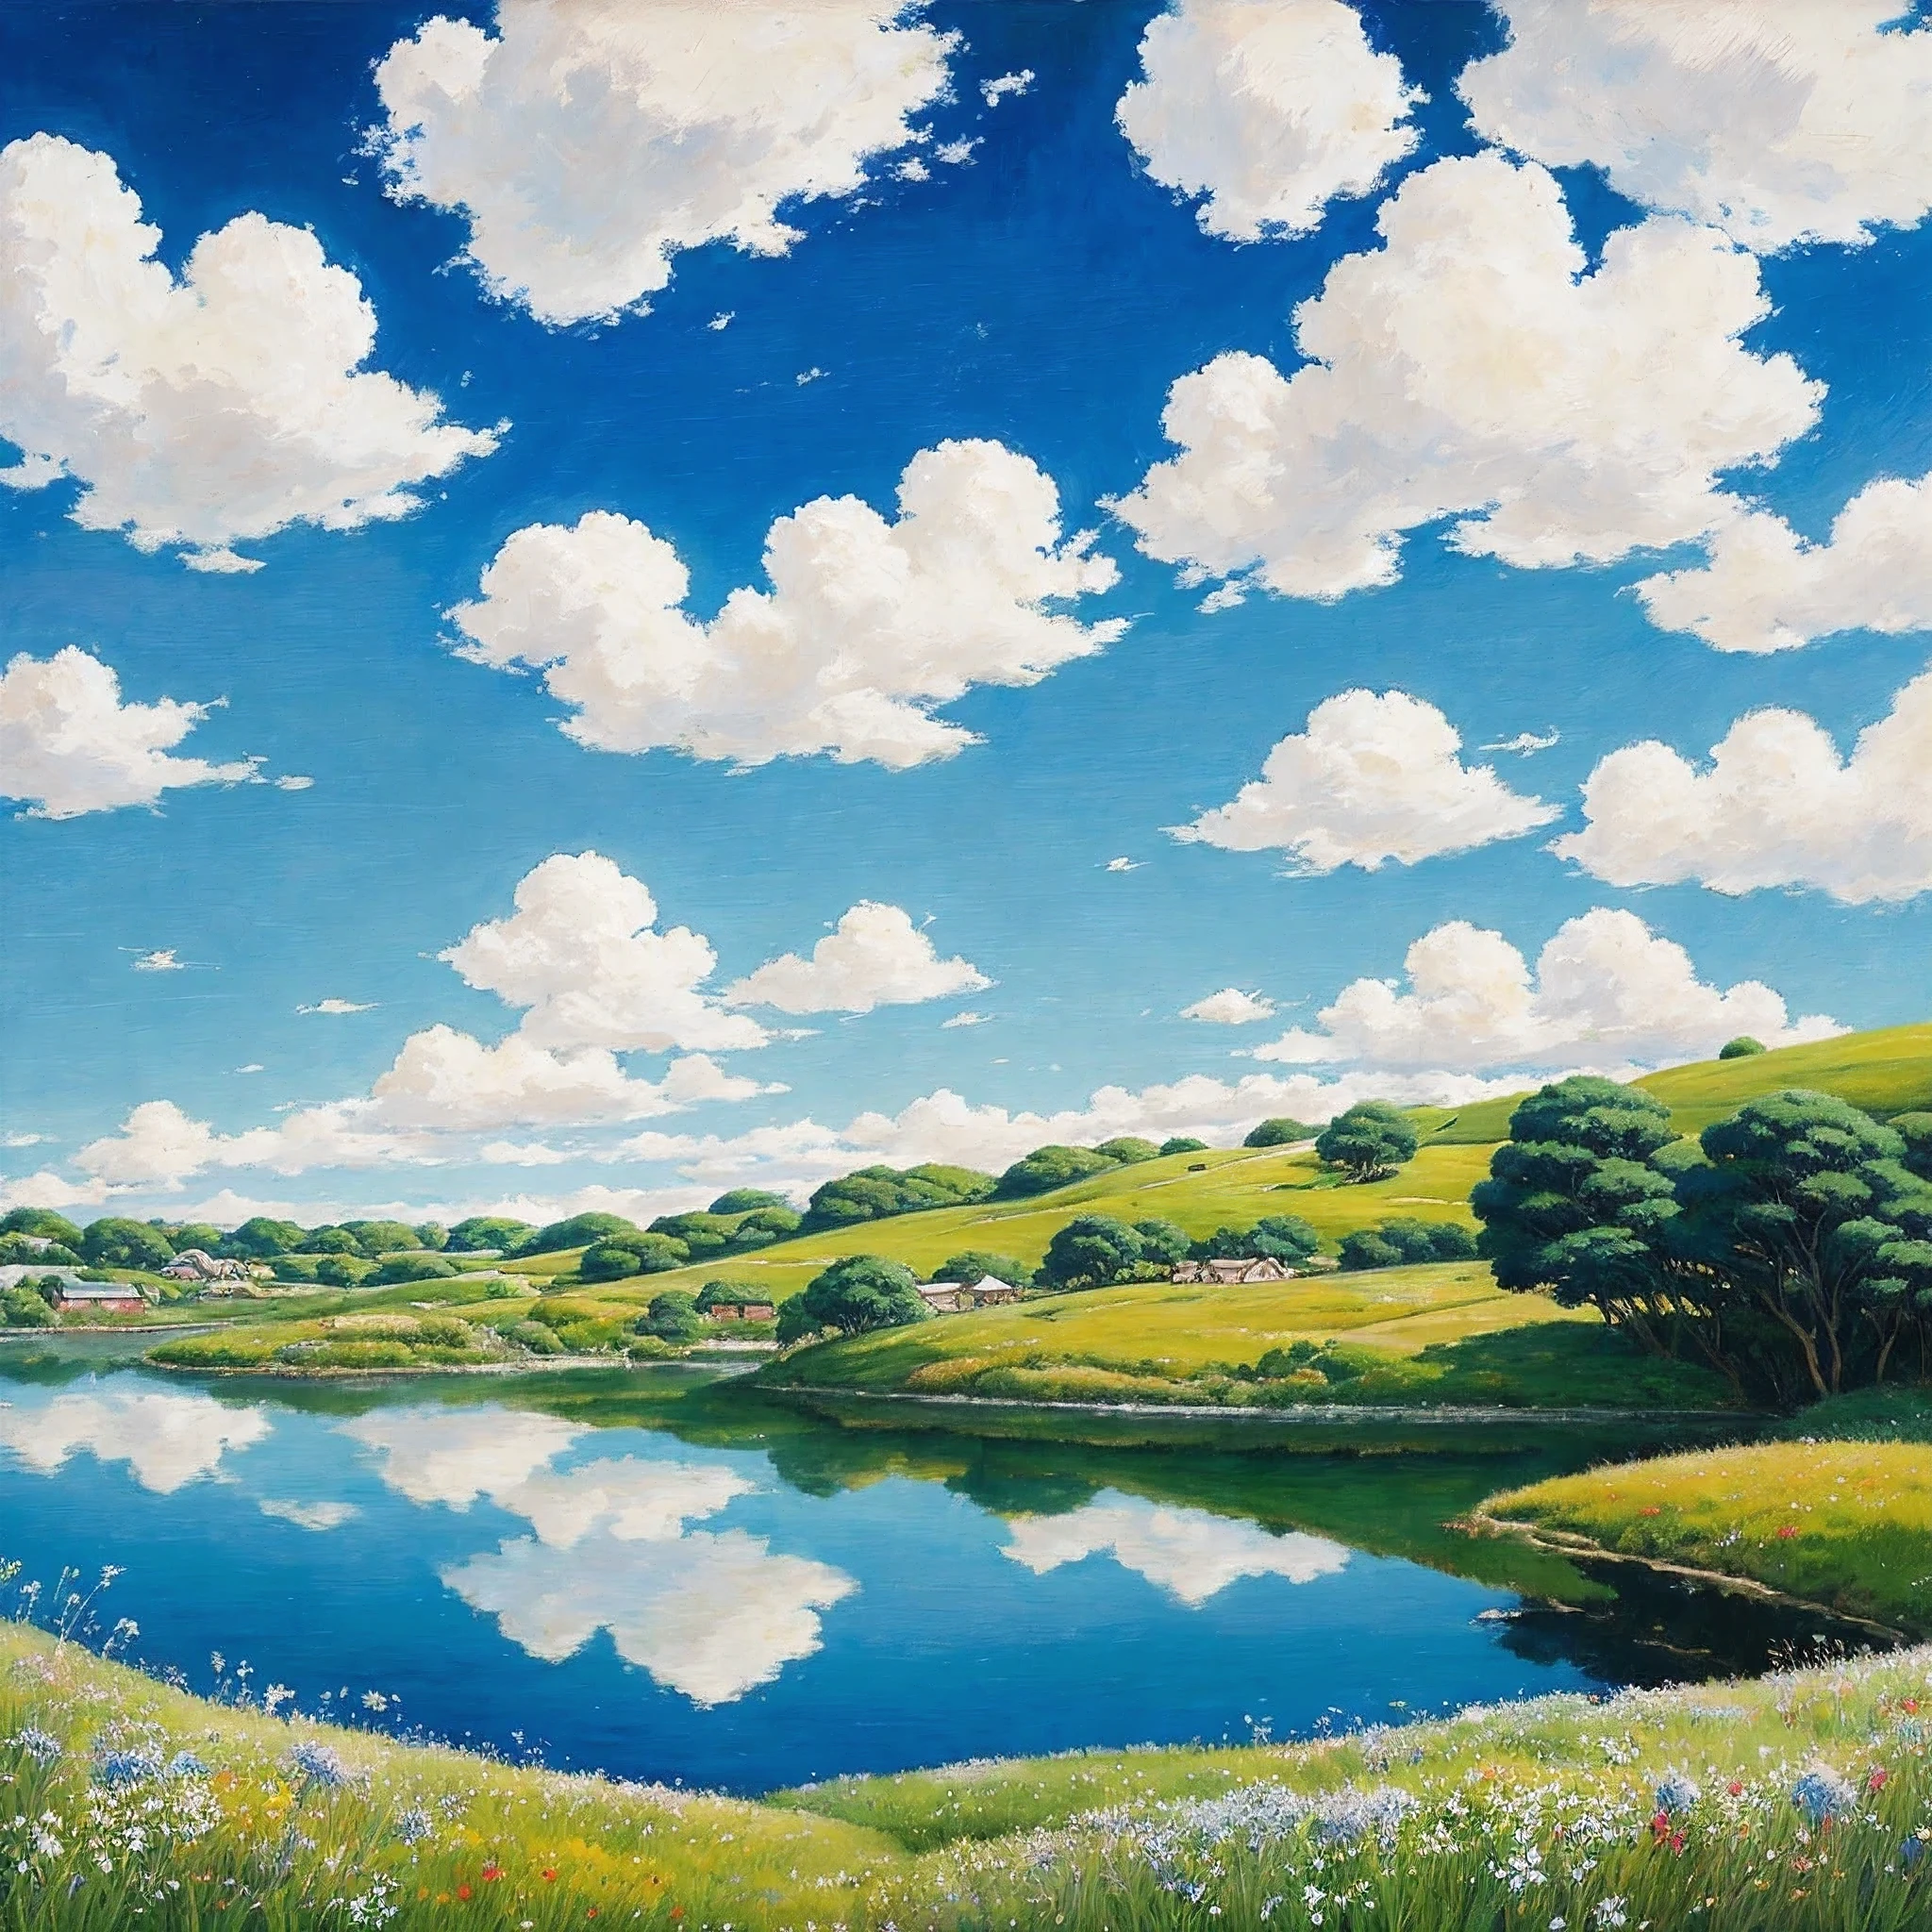 حقيقي, أصلي, لوحة زيتية جميلة ومذهلة للمناظر الطبيعية في استوديو جيبلي هاياو ميازاكي&#39;مروج بتلة مع سماء زرقاء وسحب بيضاء